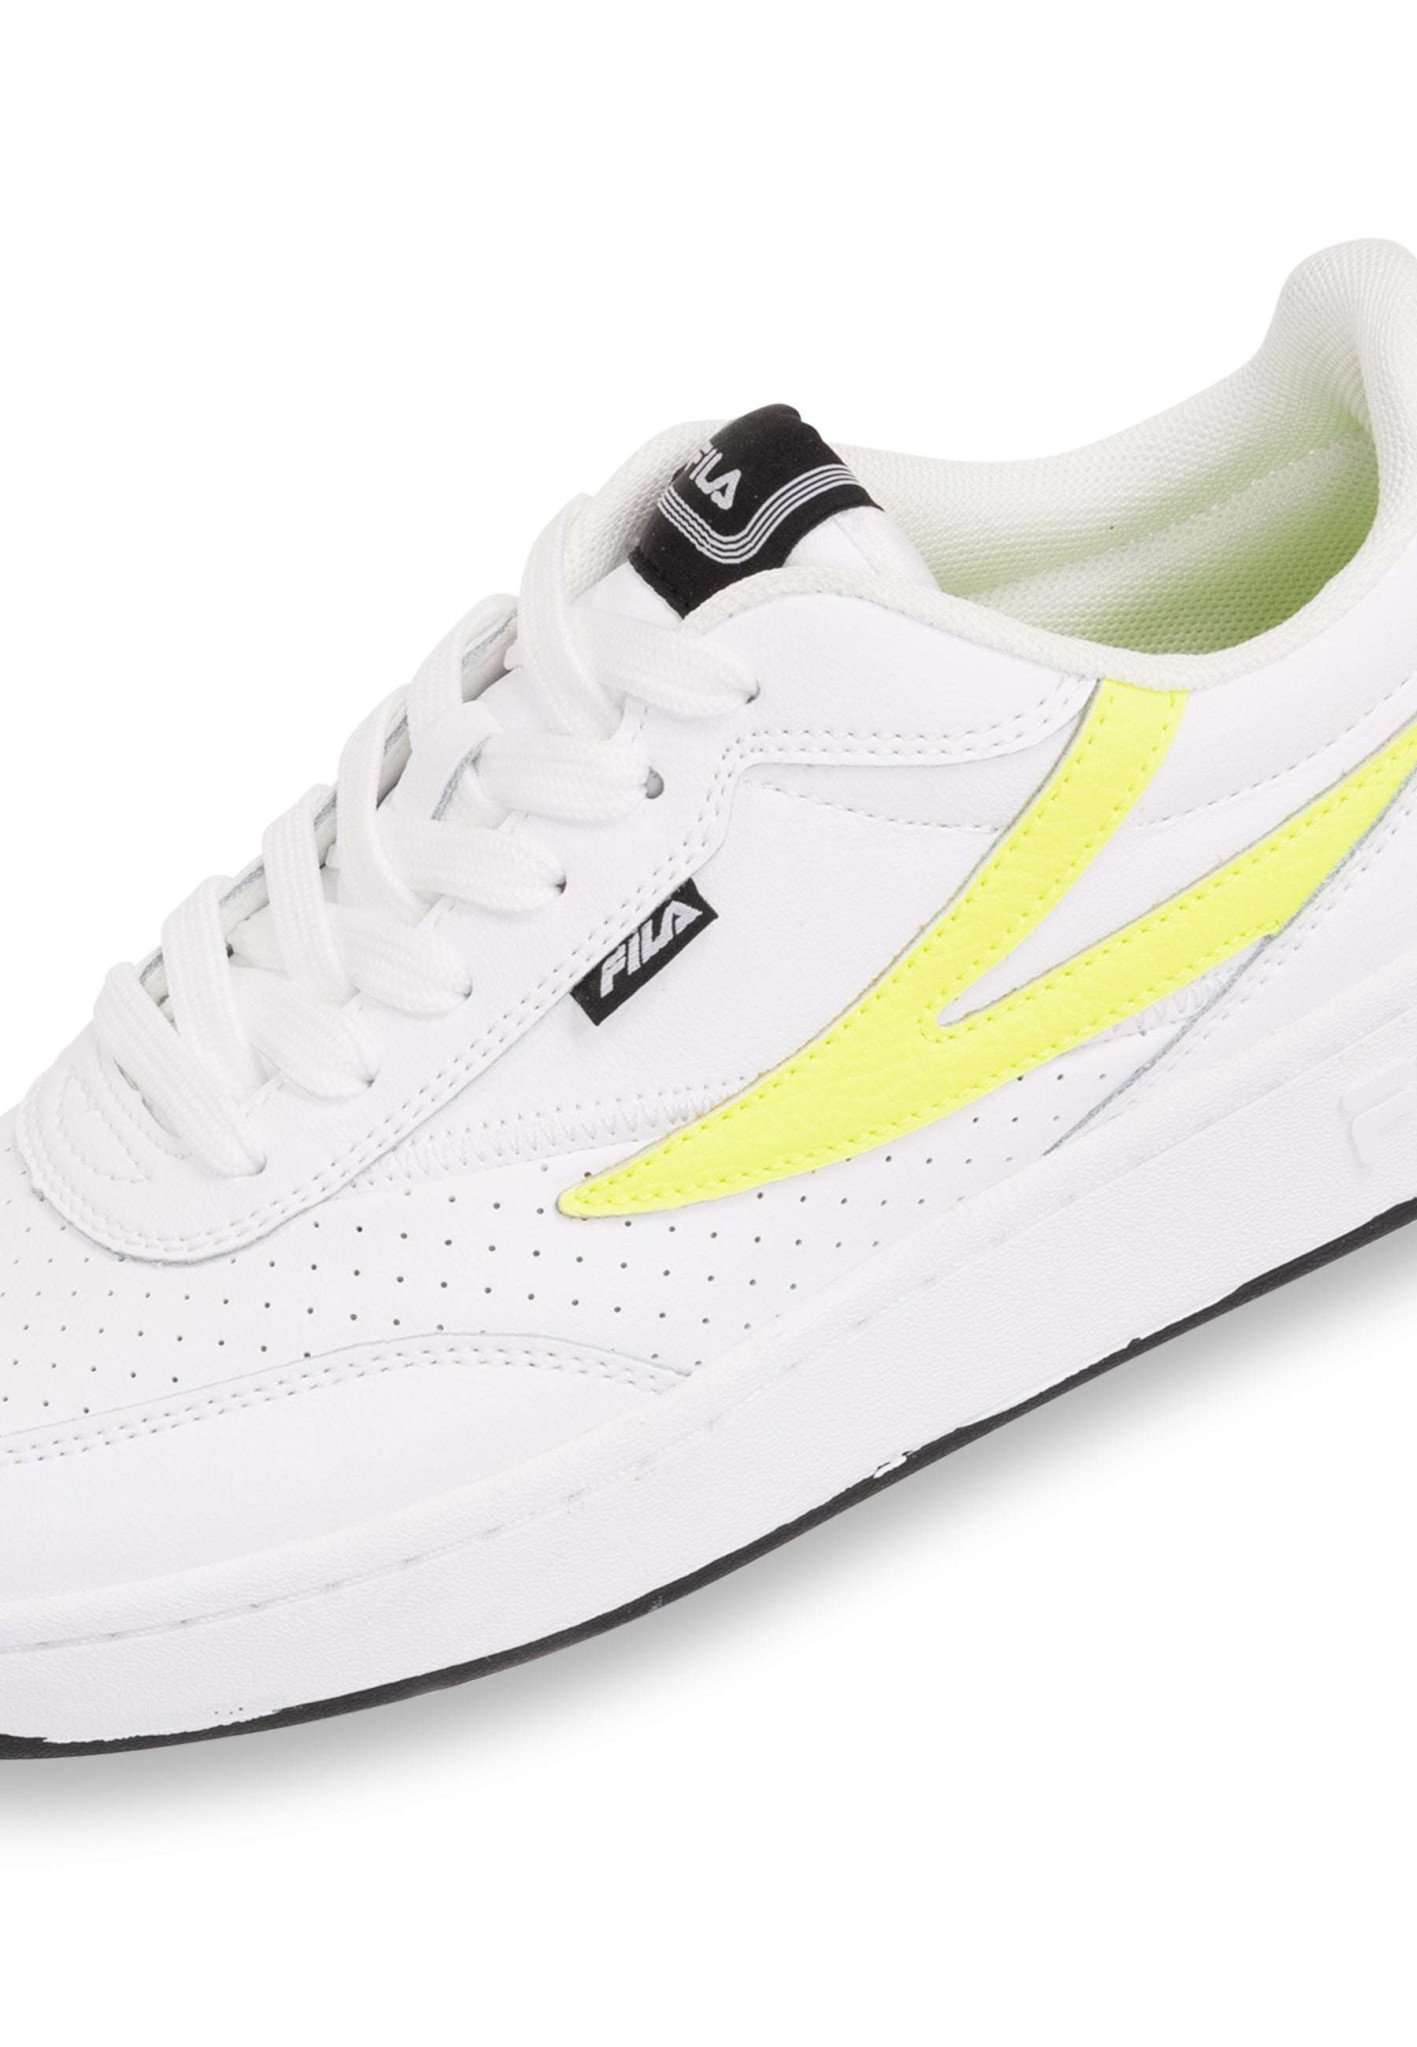 Fila Sevaro Wmn in White-Safety Yellow Sneakers Fila   